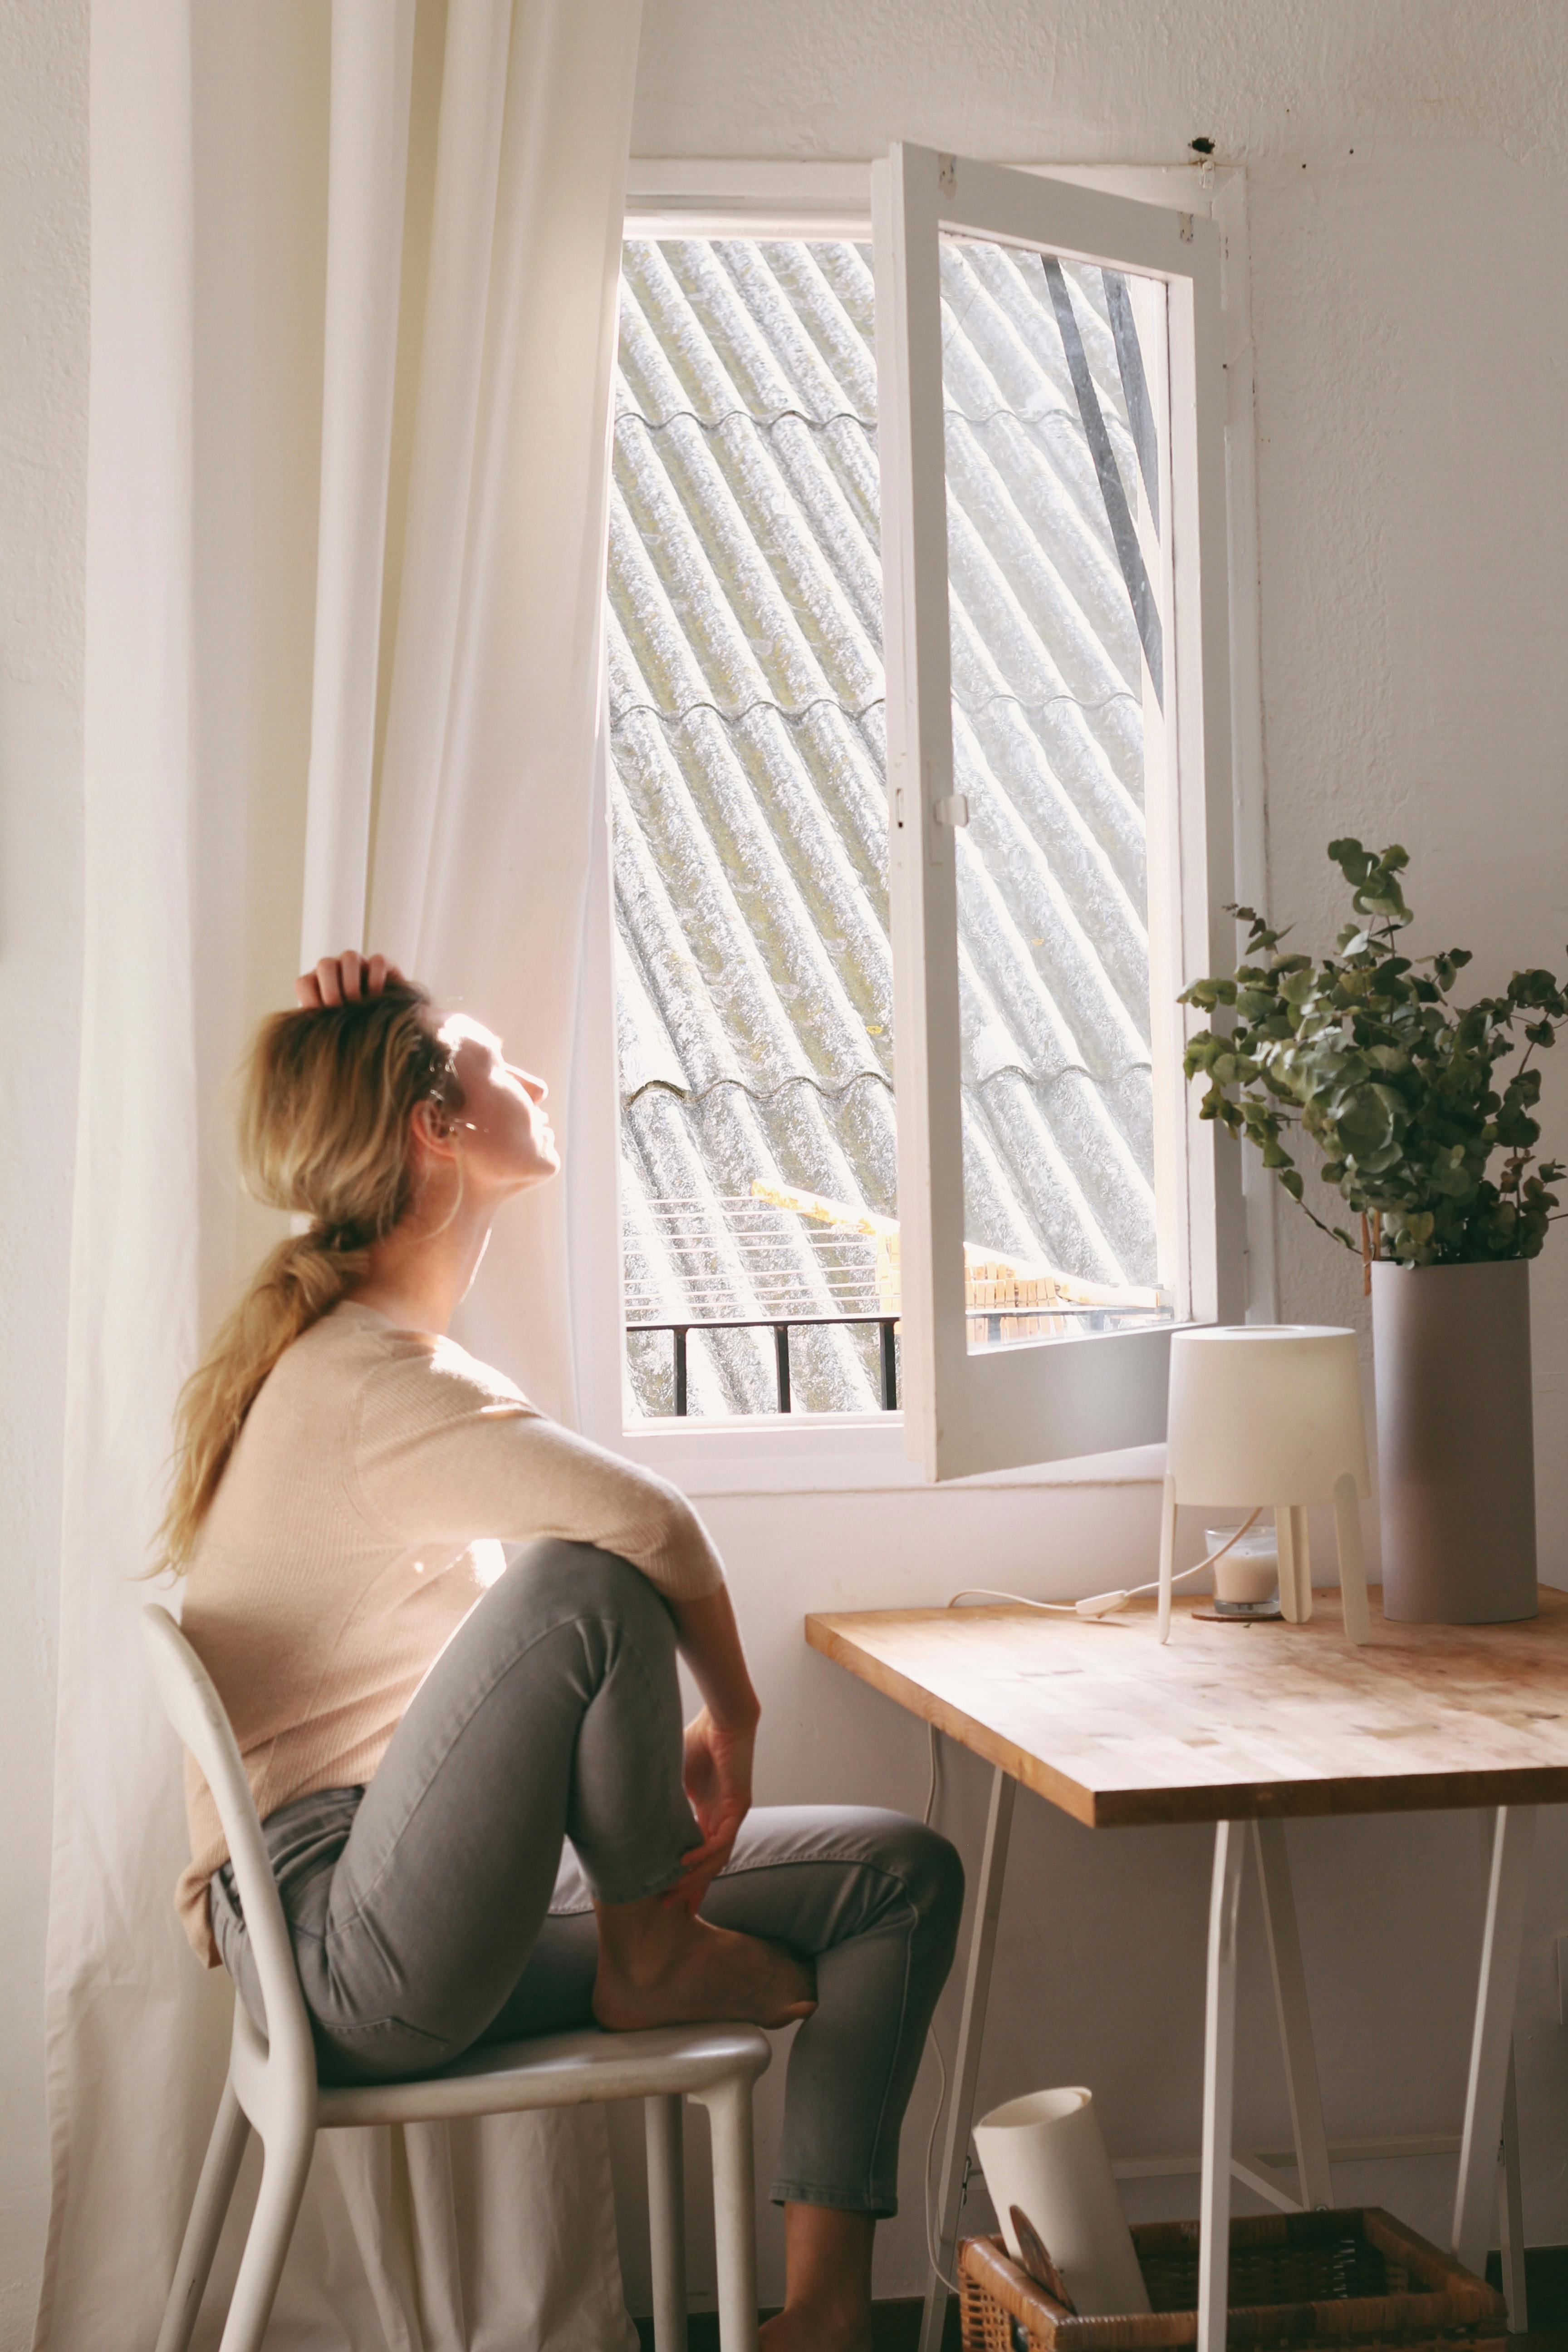 Une jeune femme regardant par la fenêtre de son appartement | Source : Pexels